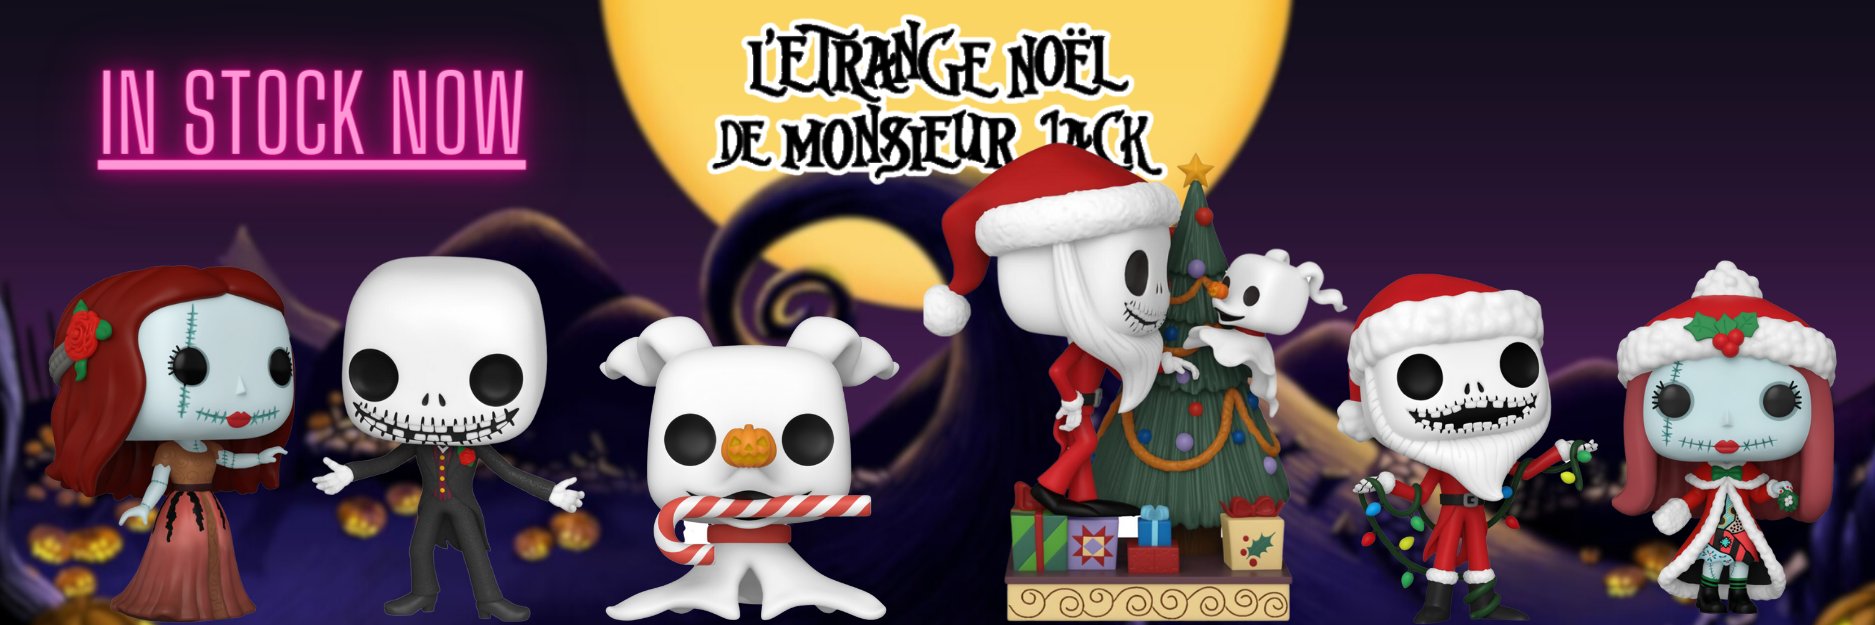 L'ETRANGE NOEL DE MONSIEUR JACK 30TH - POP Disney N° 1383 - Santa